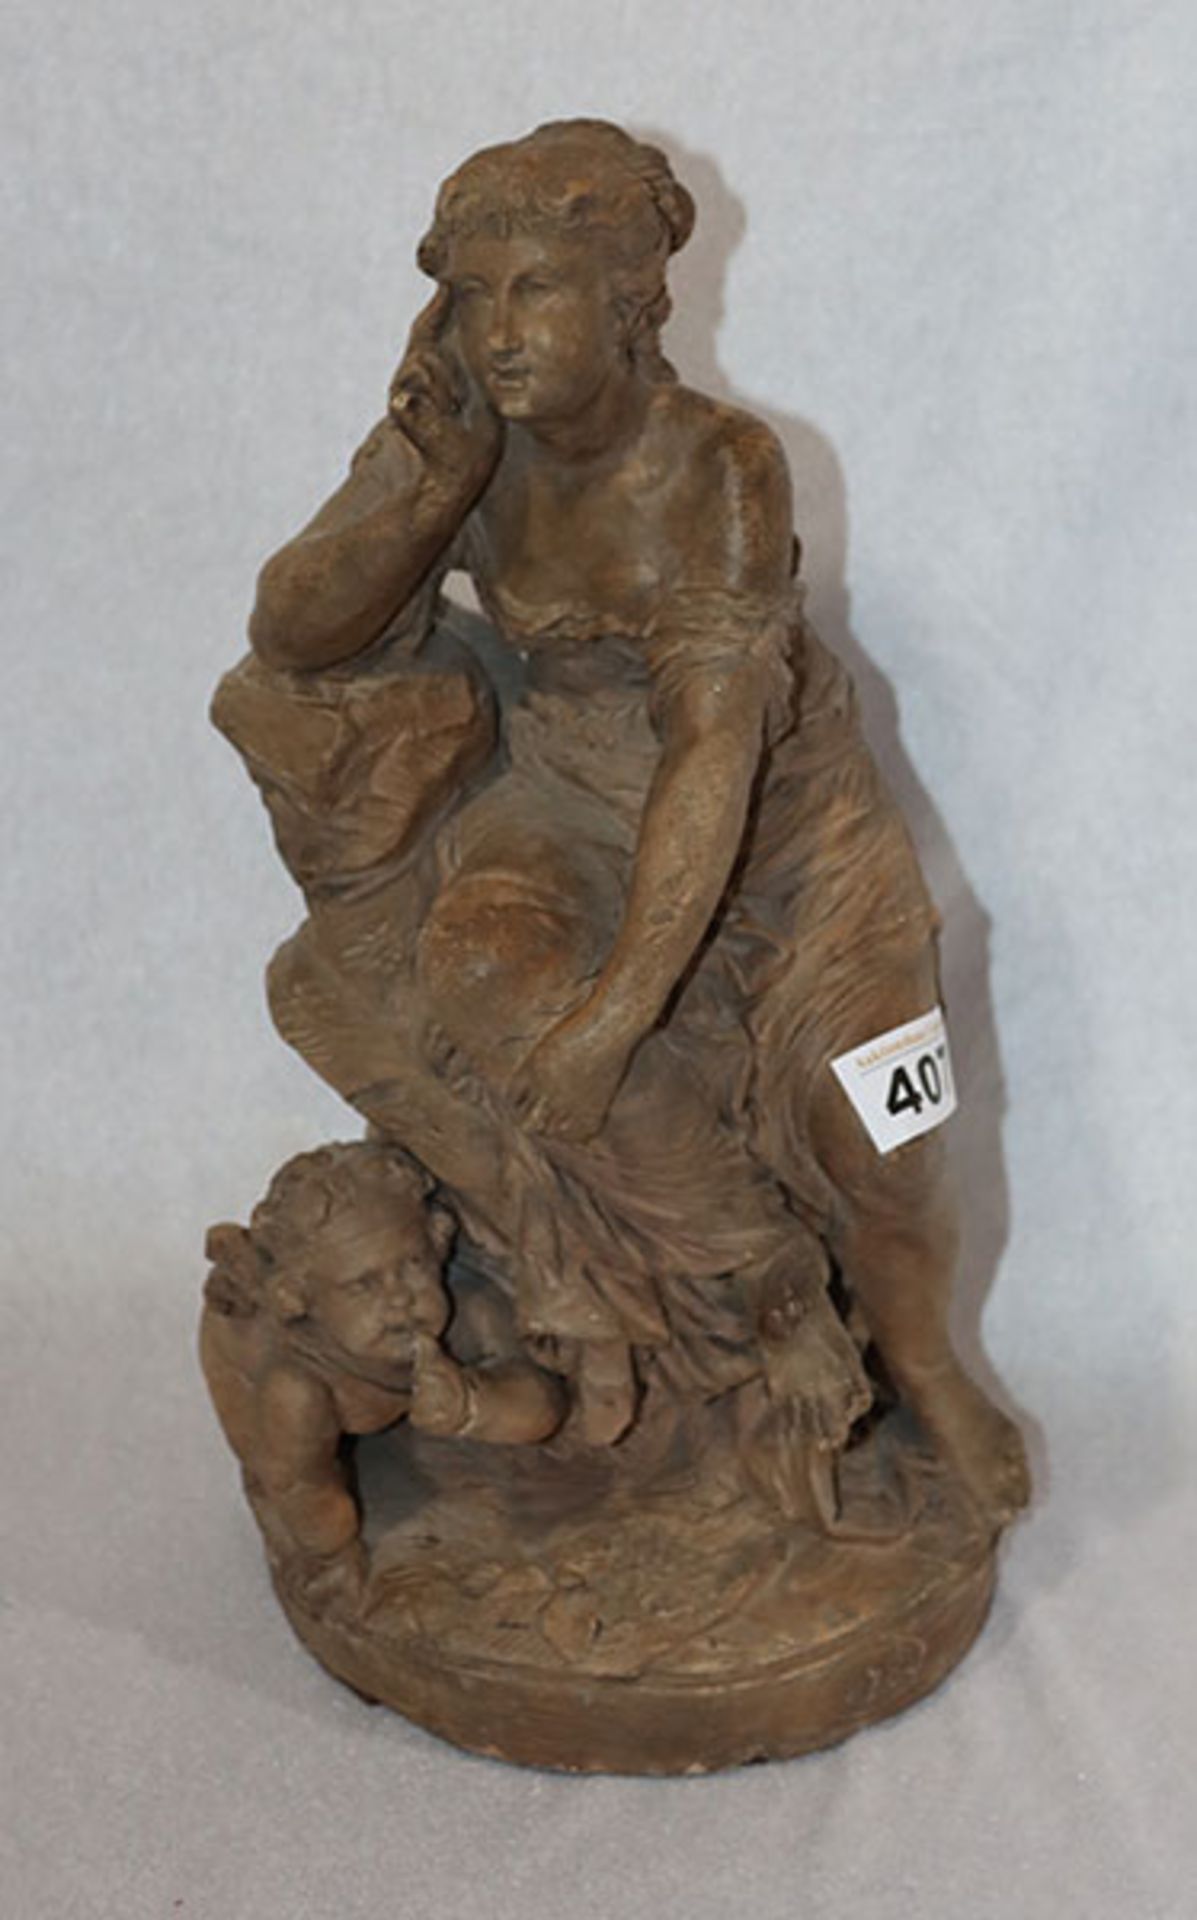 Tonfigur 'Sitzende Frau mit Engel', datiert 1786, monogrammiert AR, H 34 cm, teils beschädigt,